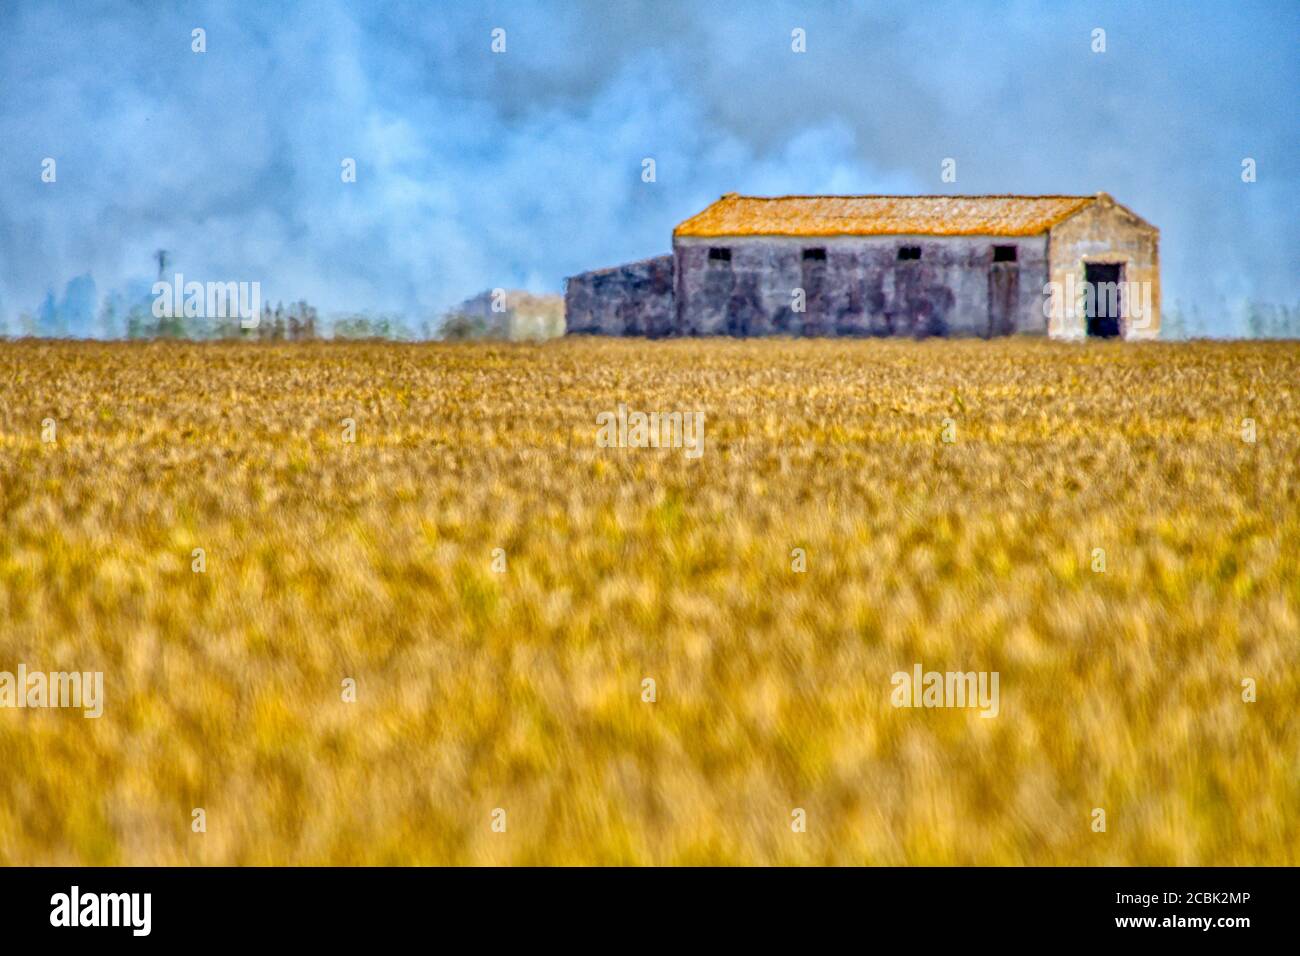 Stubble burning in the rice fields, Isla Mayor, Seville, Spain Stock Photo